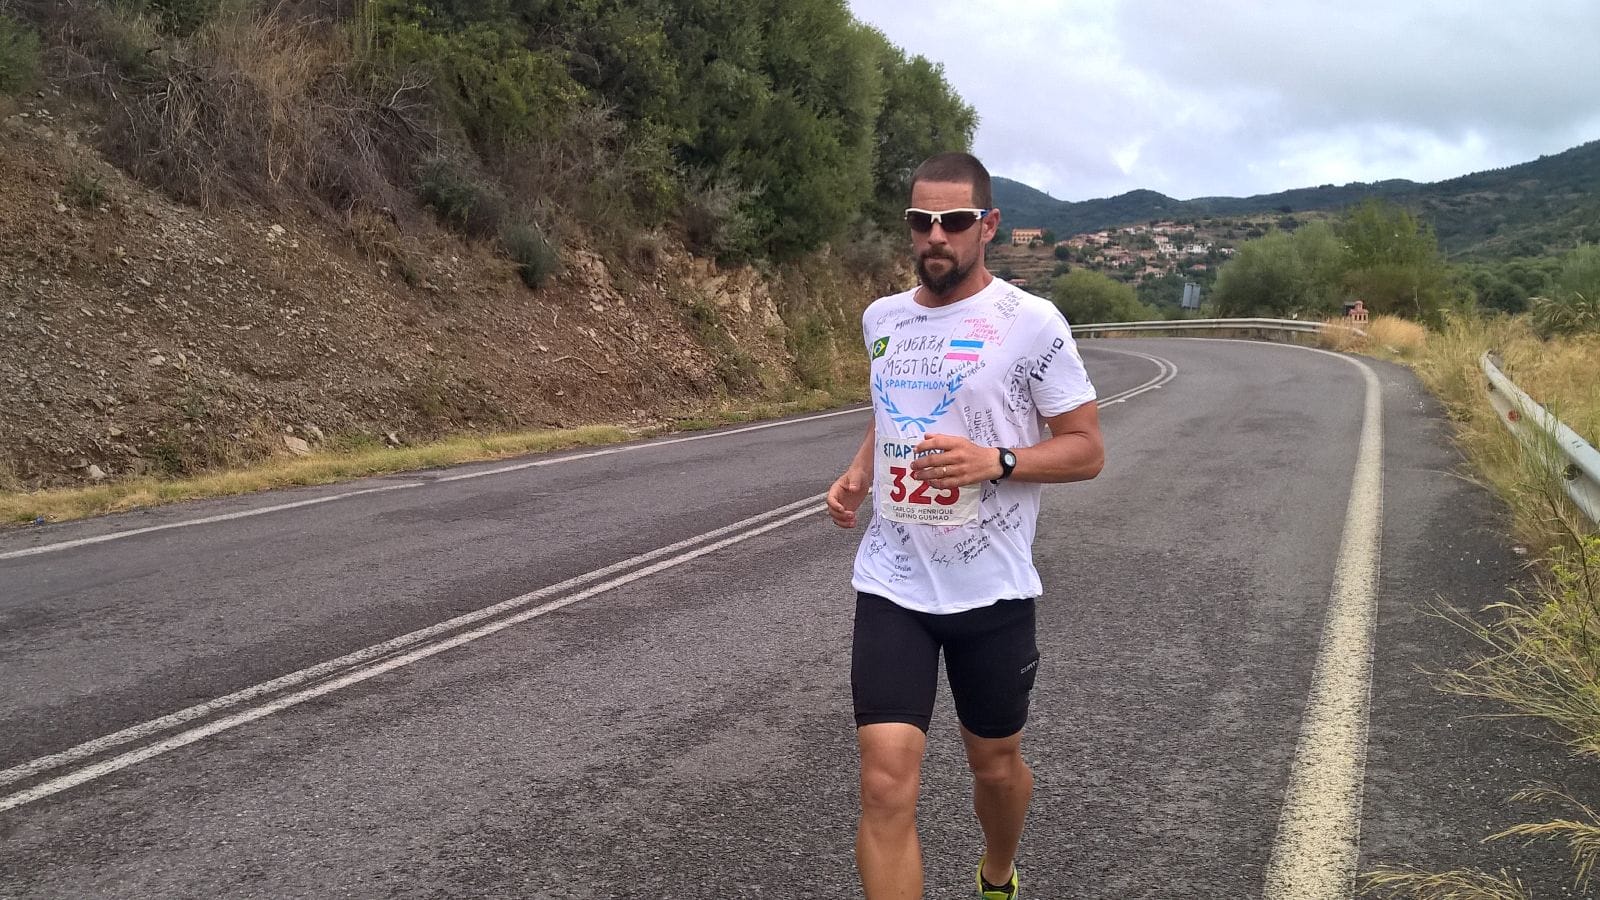 Aos 43 anos, Carlos Gusmão vai participar da tradicional prova pela 5ª vez e está motivado para superar novamente o desafio de 246 km